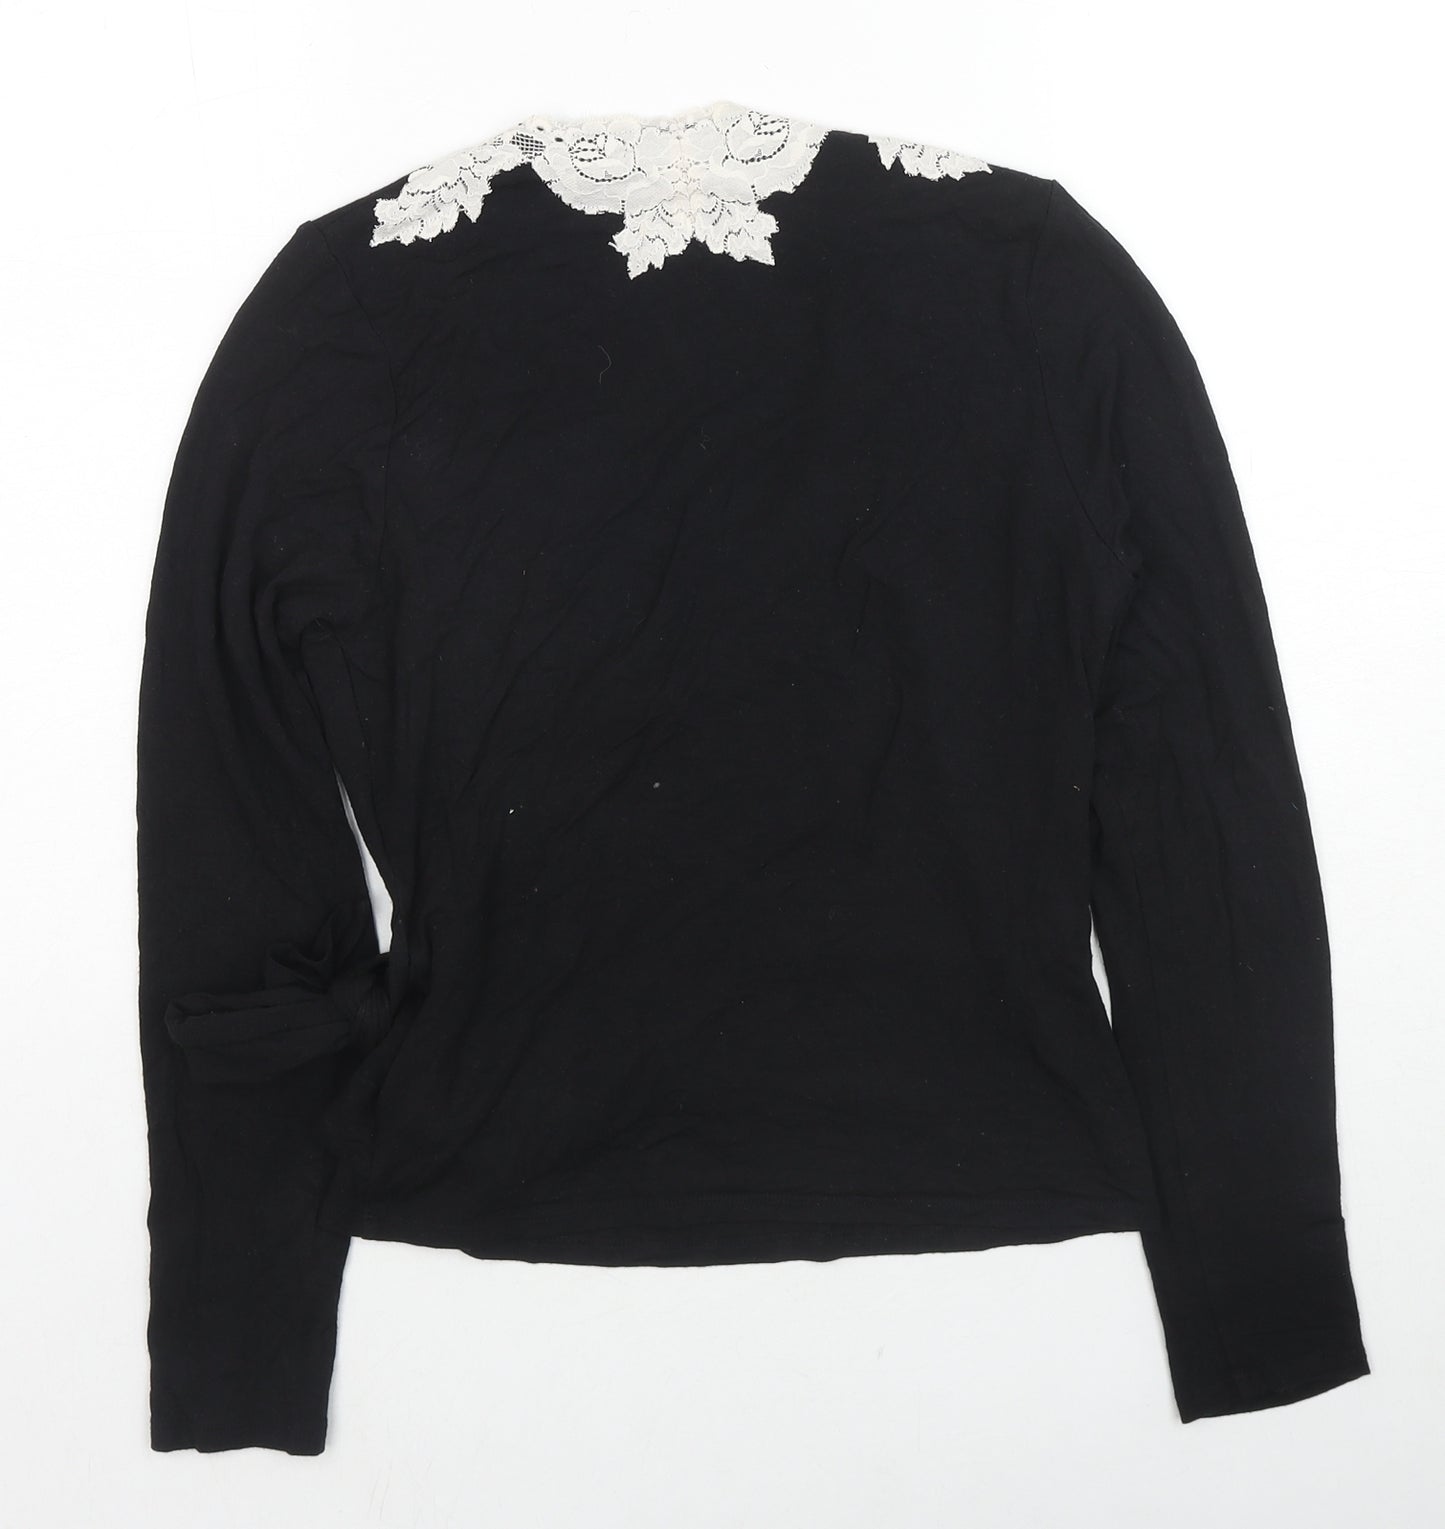 Linea Womens Black Viscose Wrap T-Shirt Size S V-Neck - Lace Trim